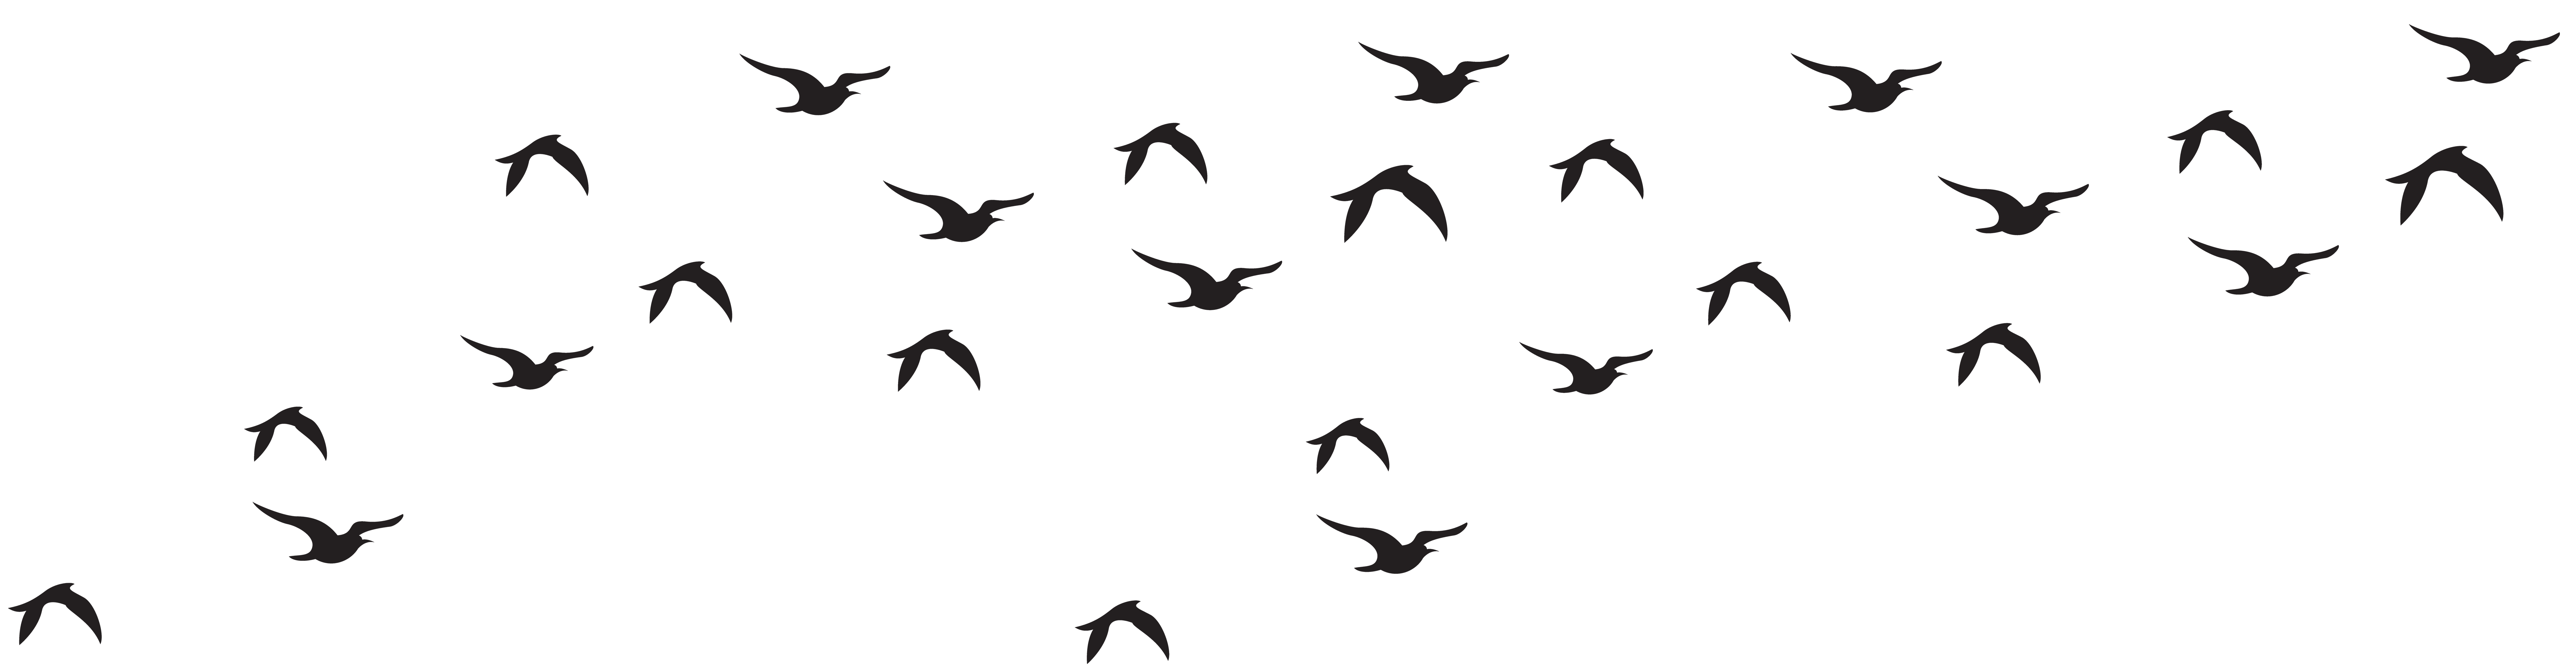 Flock of Birds PNG - 25751